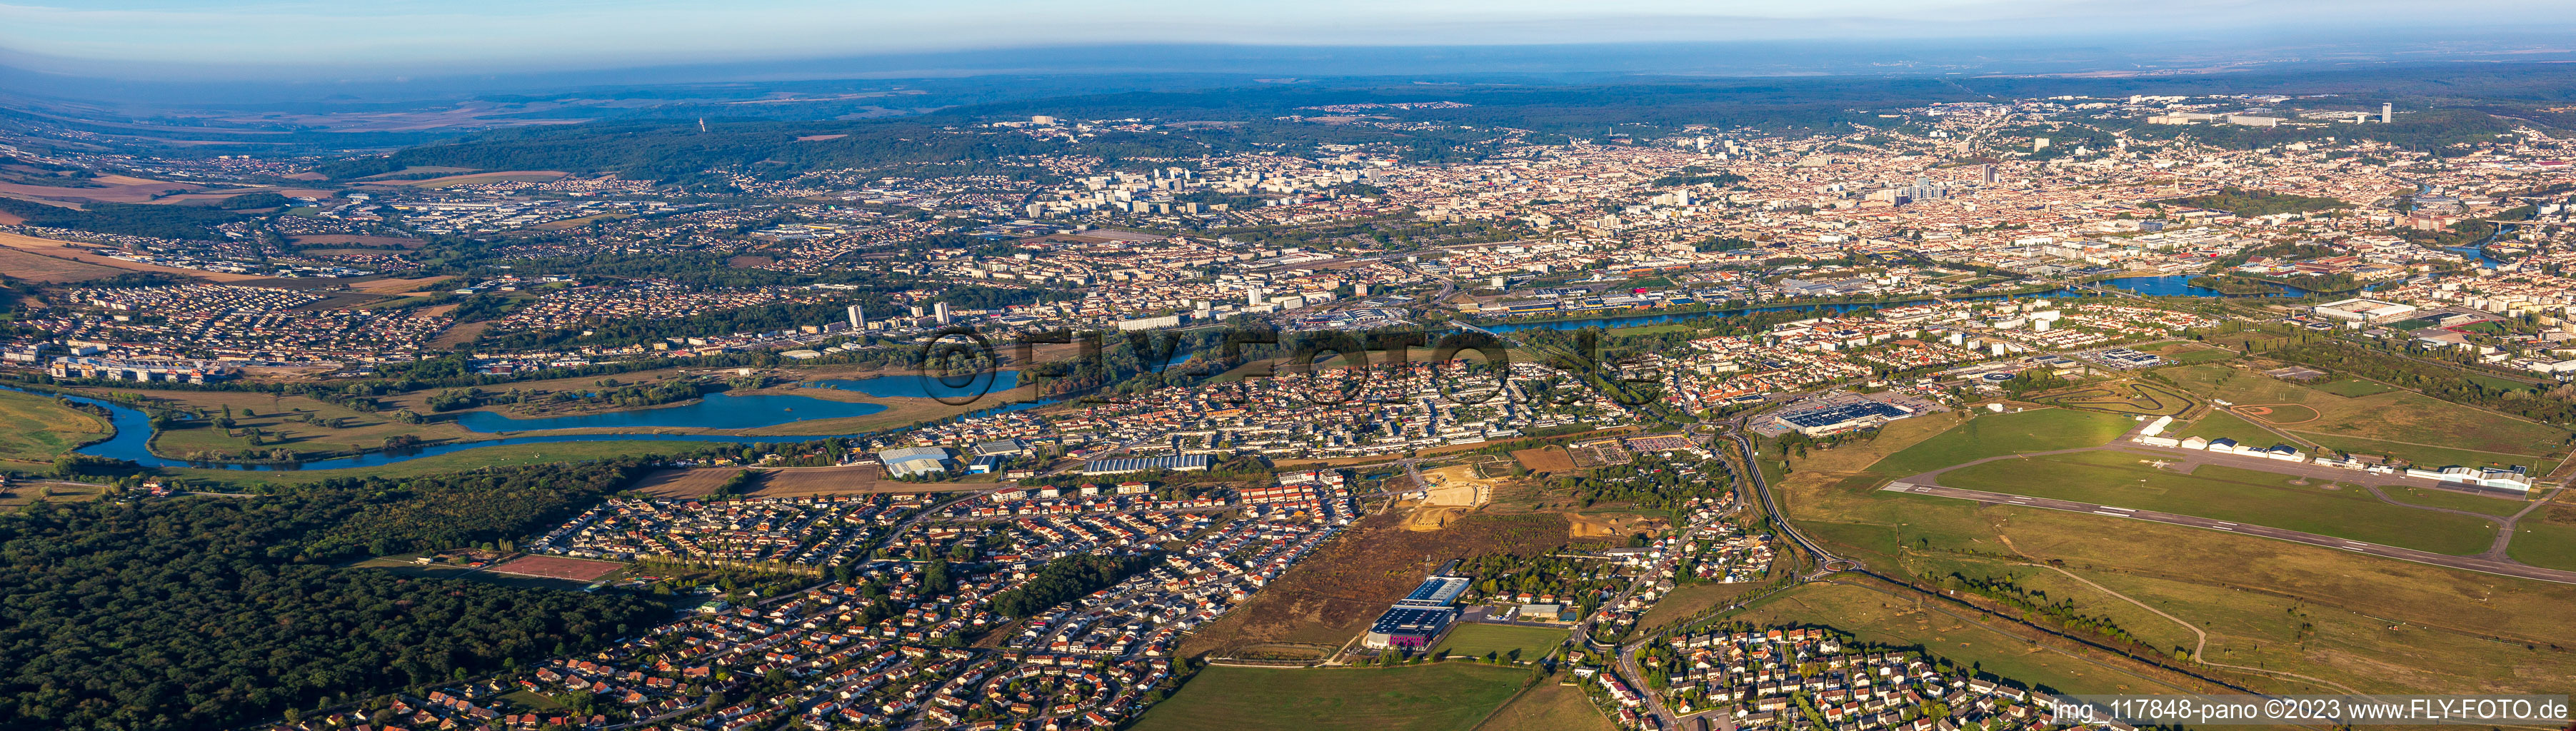 Panoramaperspektive des Stadtgebiet mit Außenbezirken und Innenstadtbereich in Nancy in Grand Est im Bundesland Meurthe-et-Moselle, Frankreich